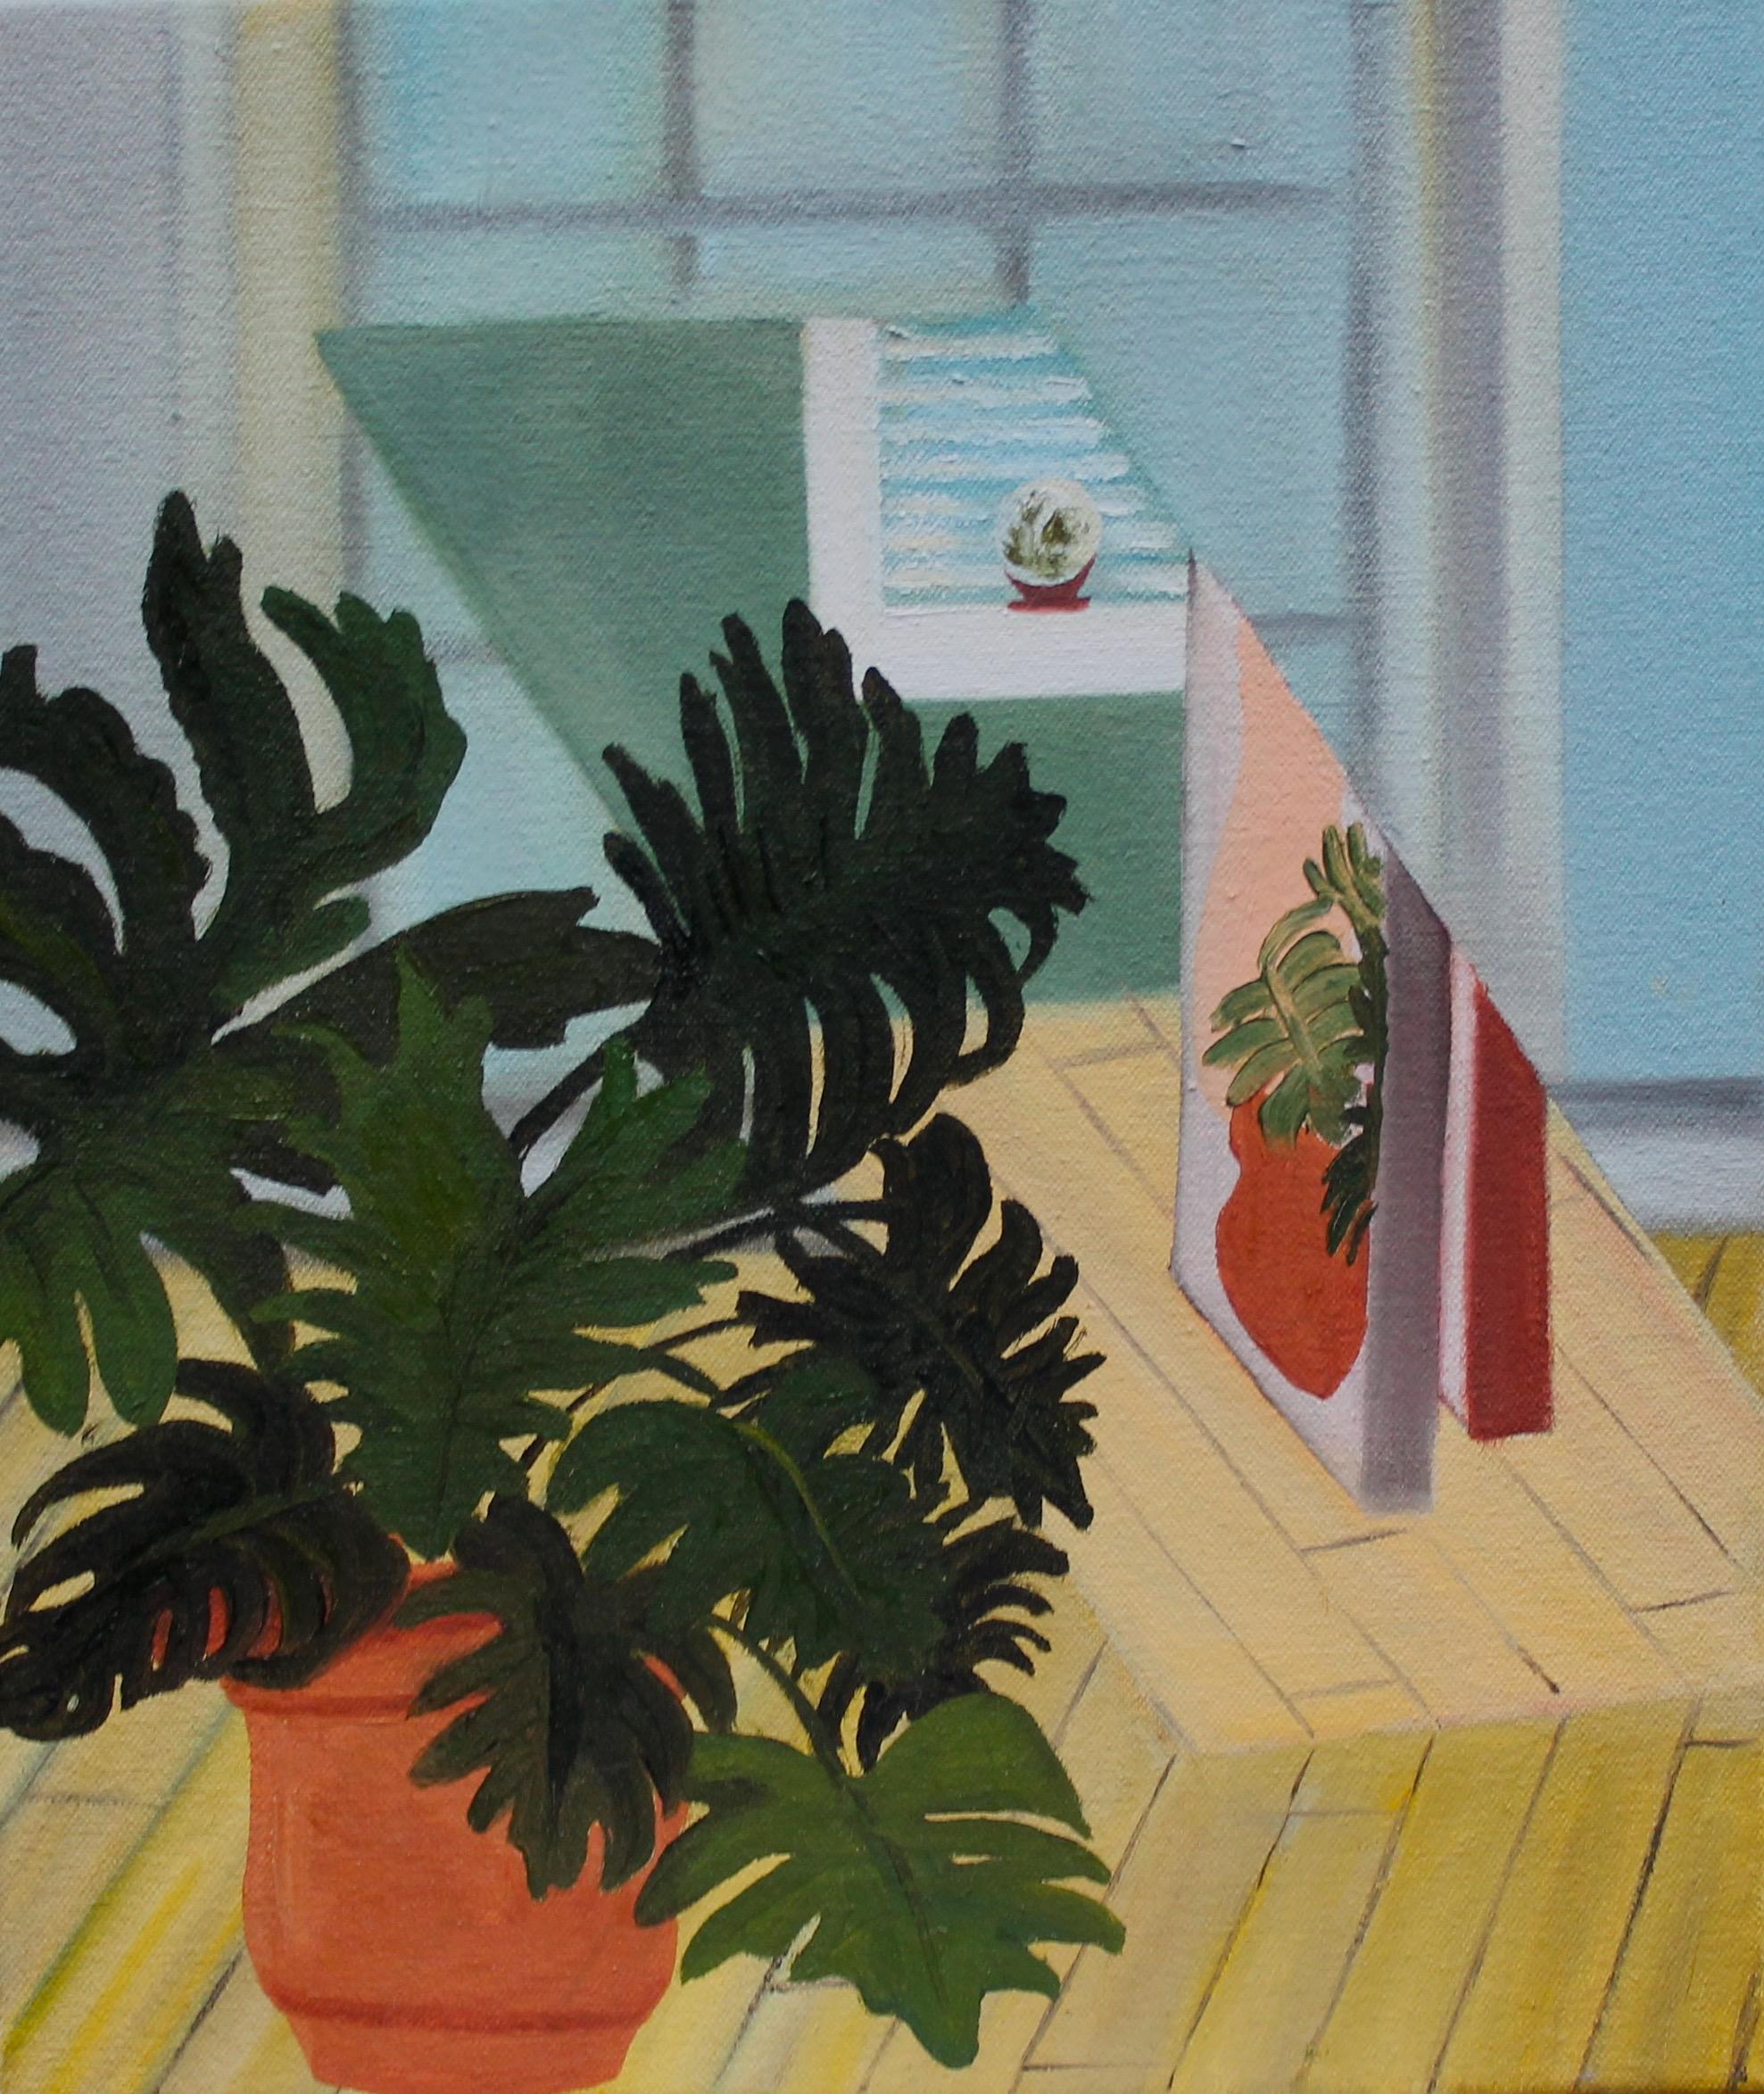 Pflanzgefäß mit Spiegel, 2018, Stillleben, Interieur, Gemälde in Öl auf Leinwand, Pastell